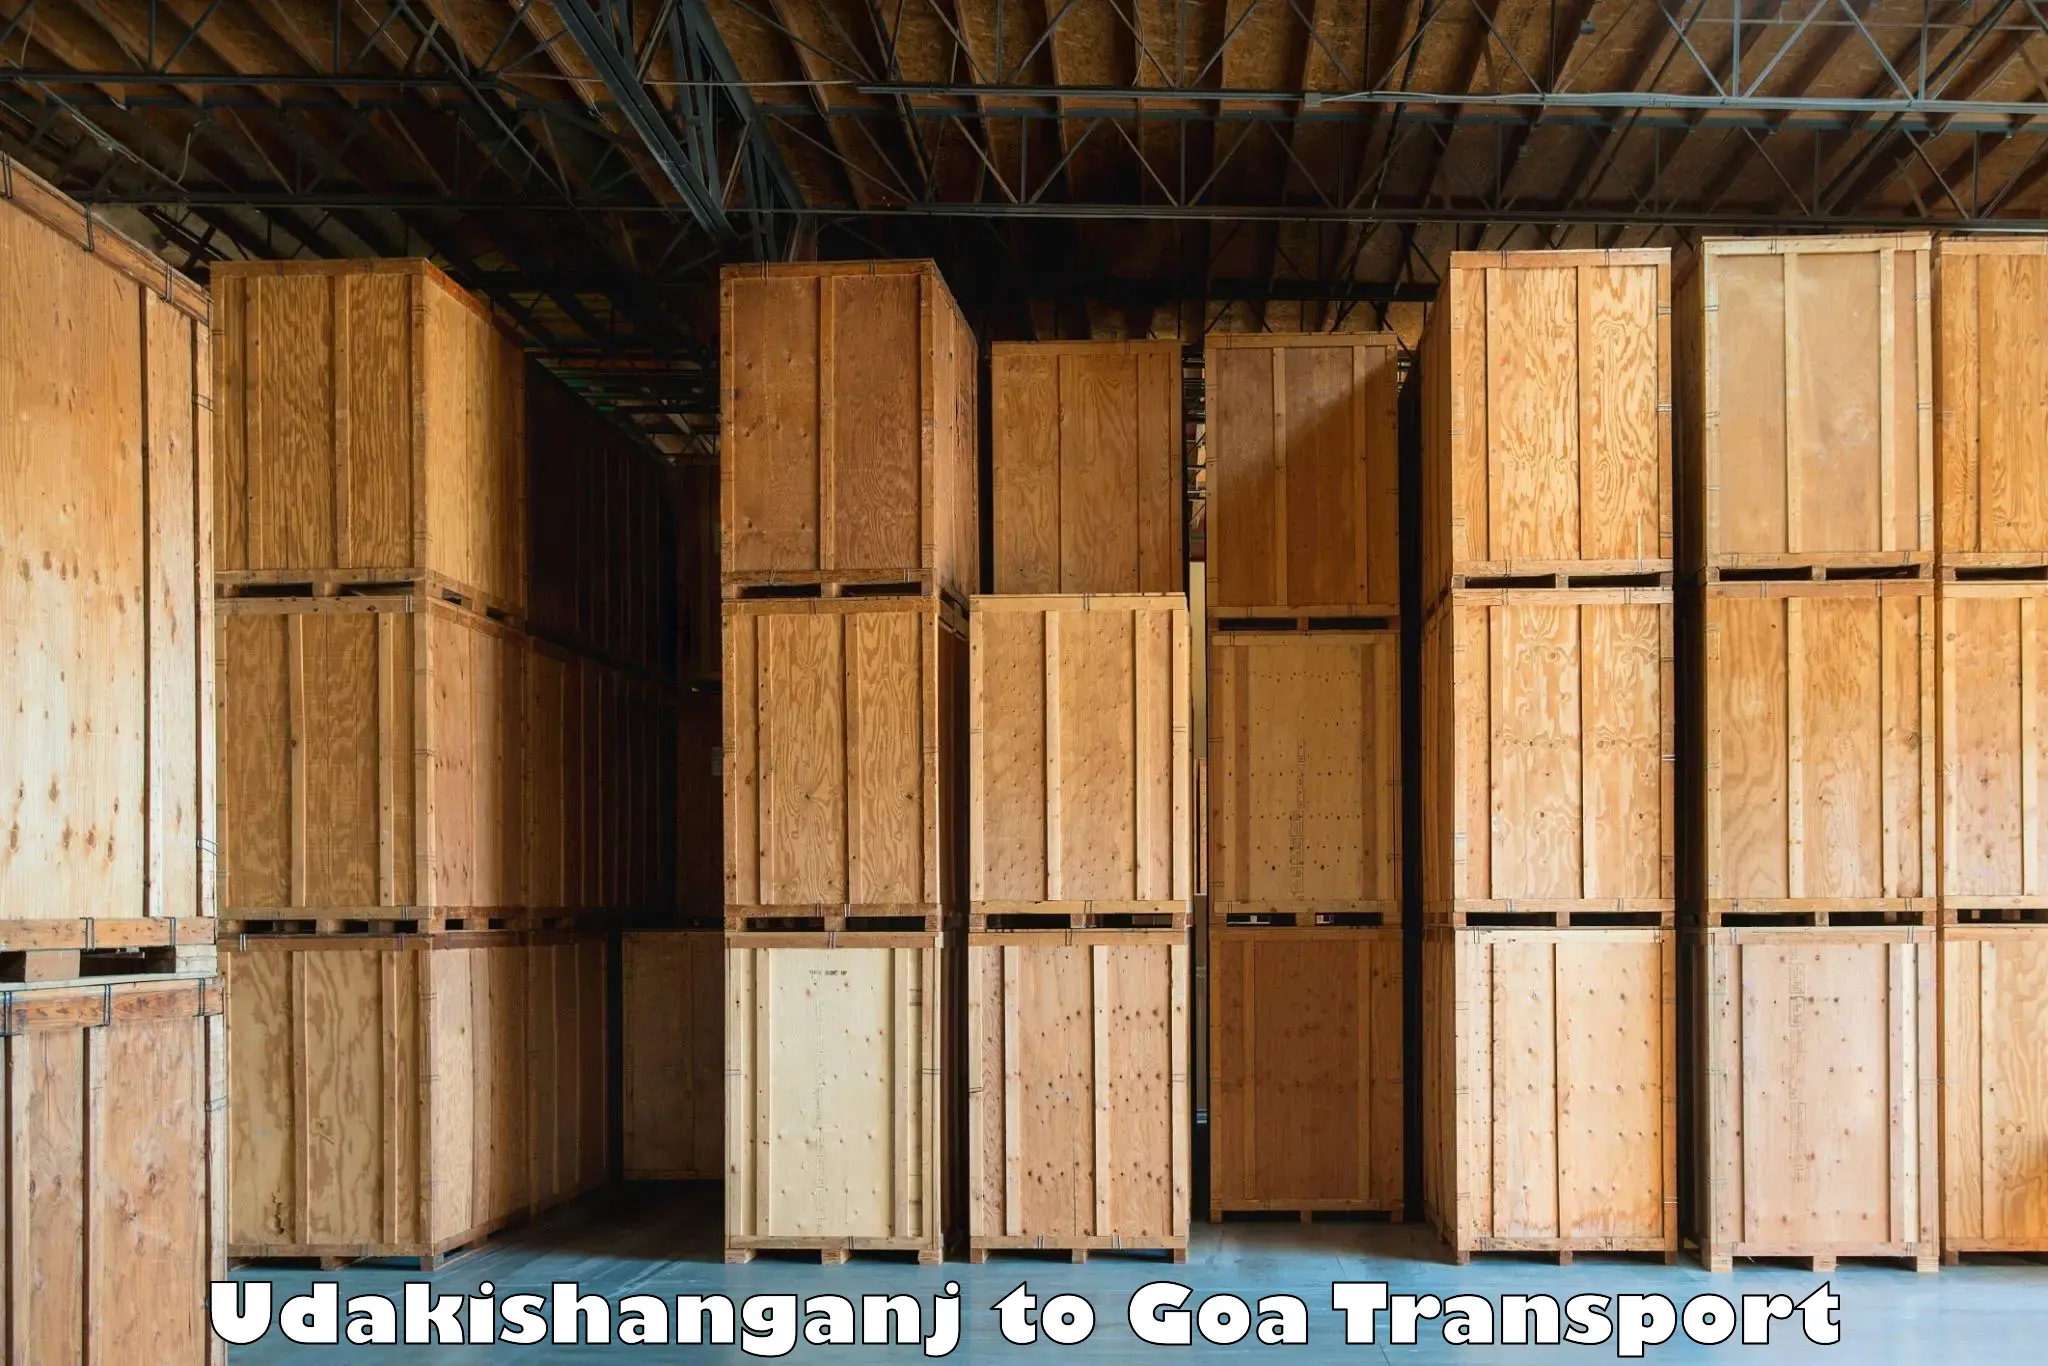 Goods transport services Udakishanganj to Goa University